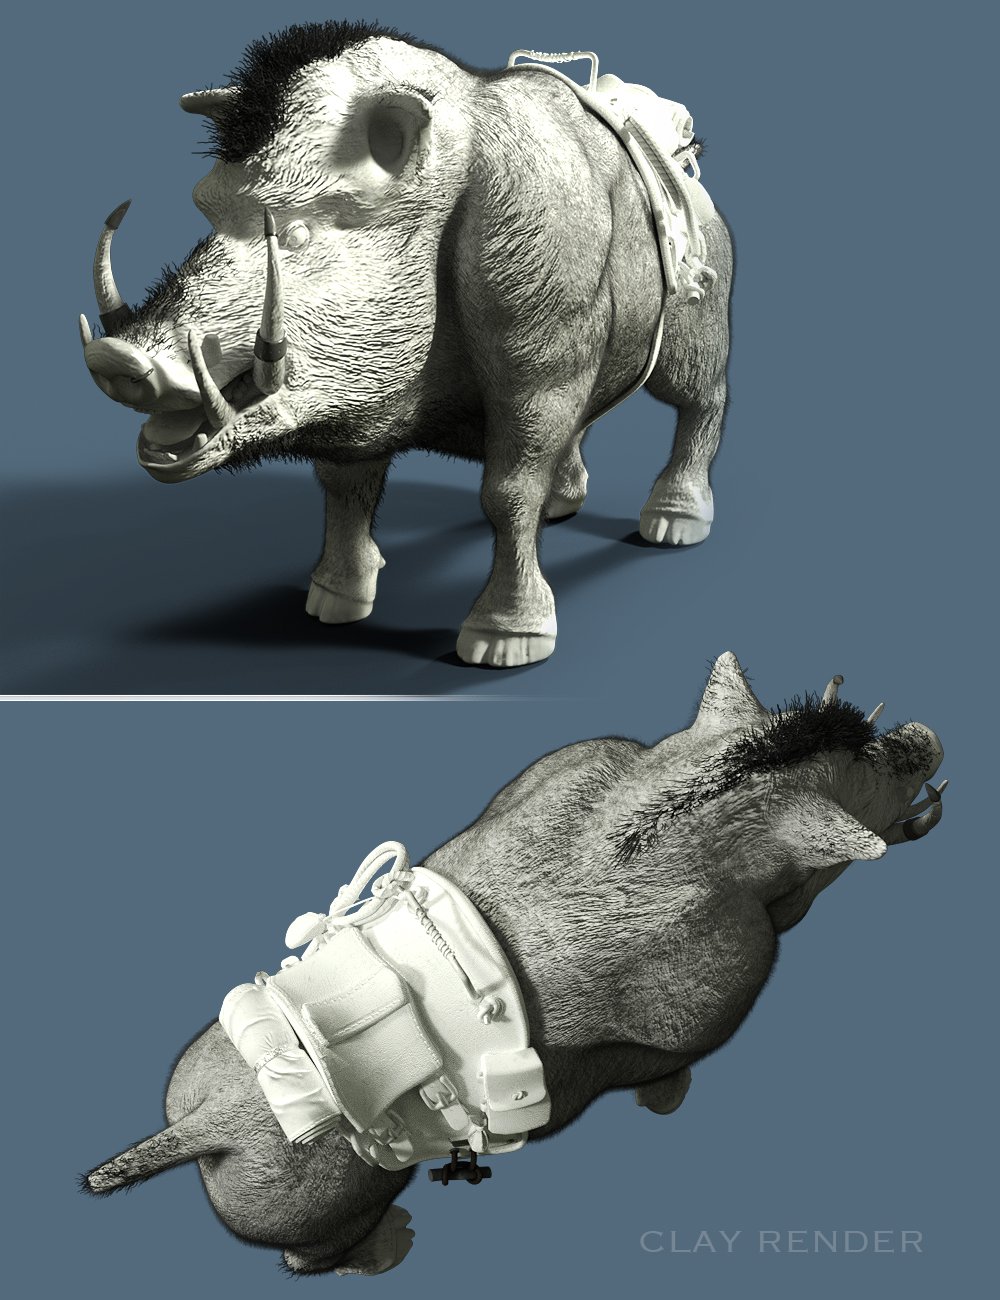 Battle Boar by: The AntFarm, 3D Models by Daz 3D